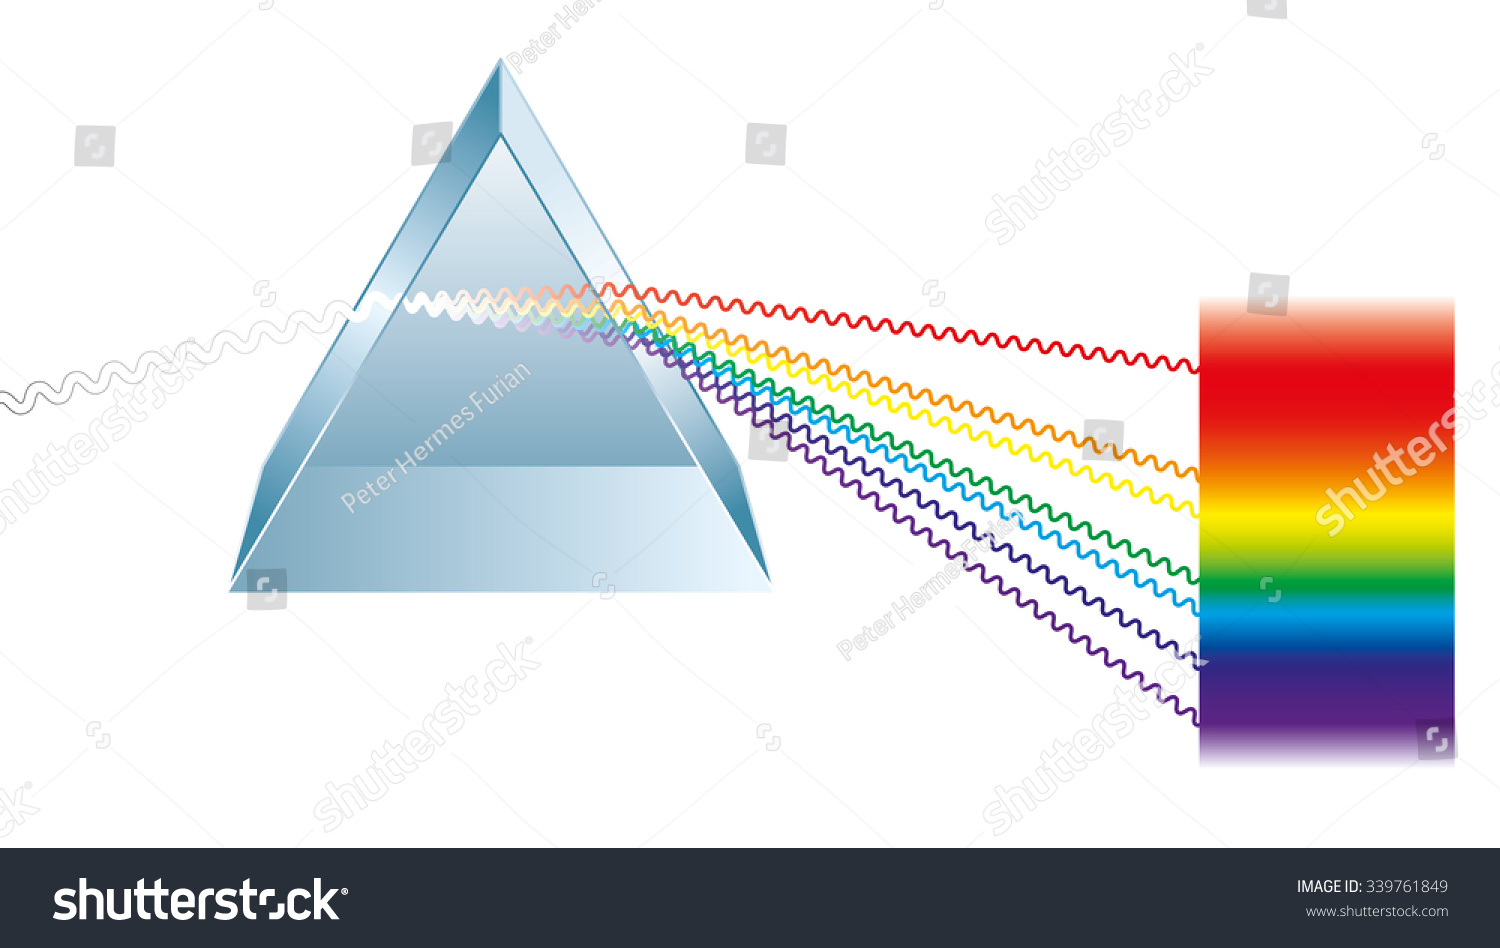 Triangular Prism Breaks White Light Ray Stock Vector 339761849 ...